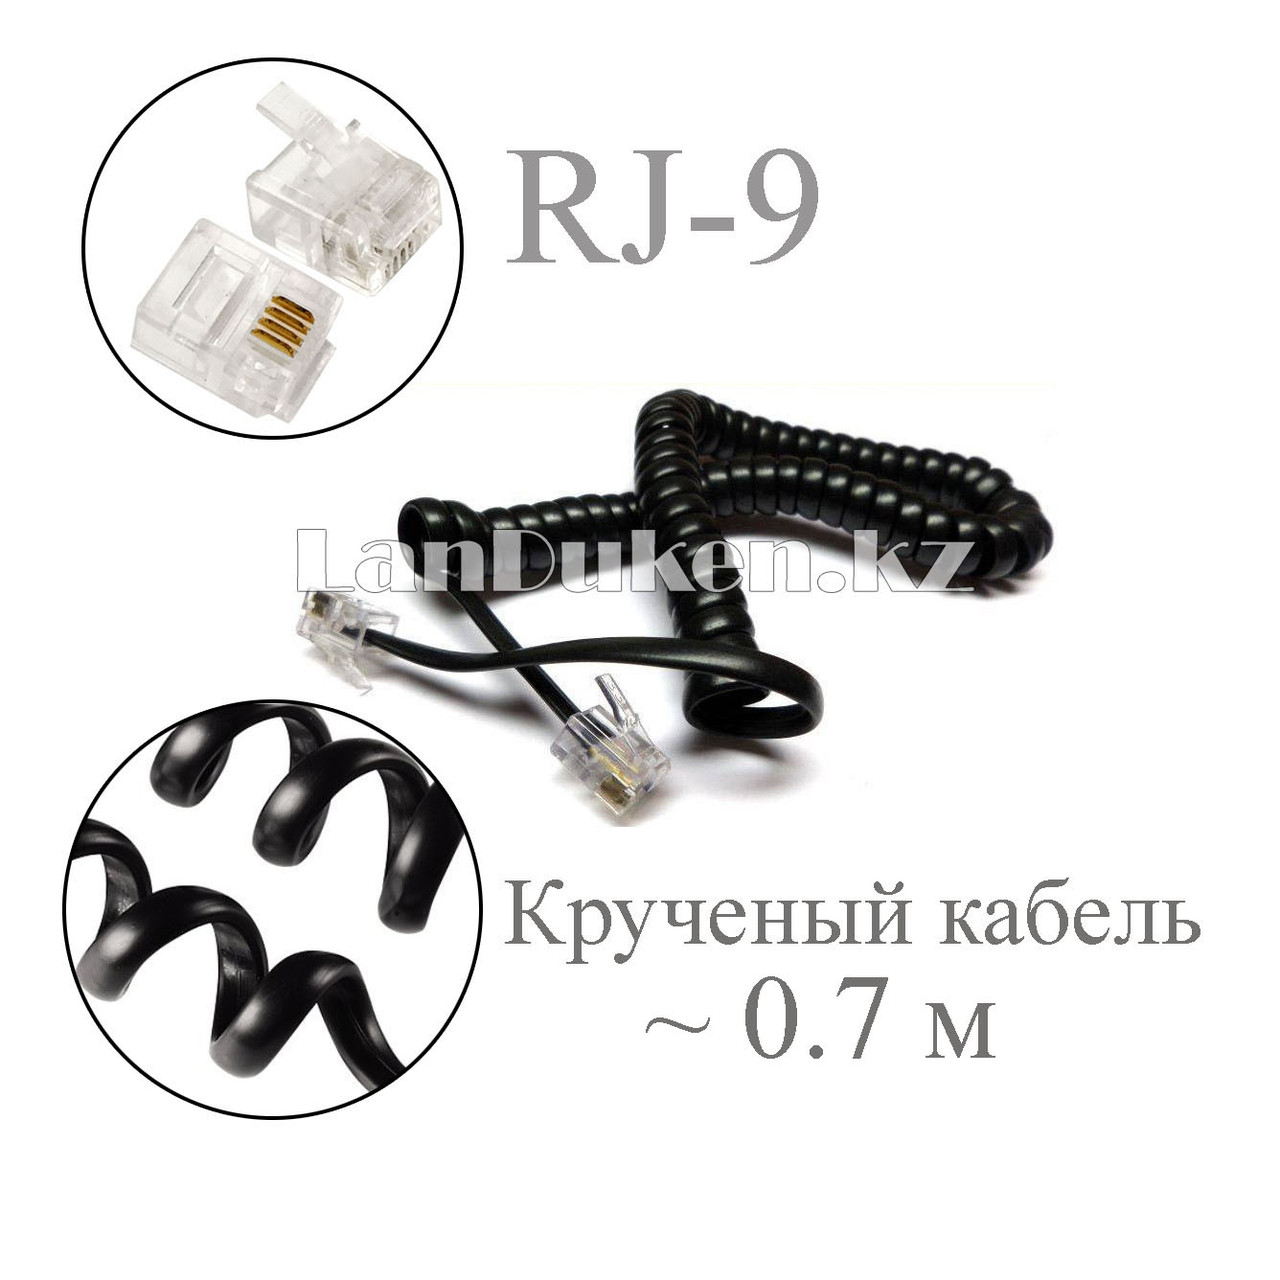 Крученый кабель для телефонной трубки с коннекторами RJ-9  38-70 см черный